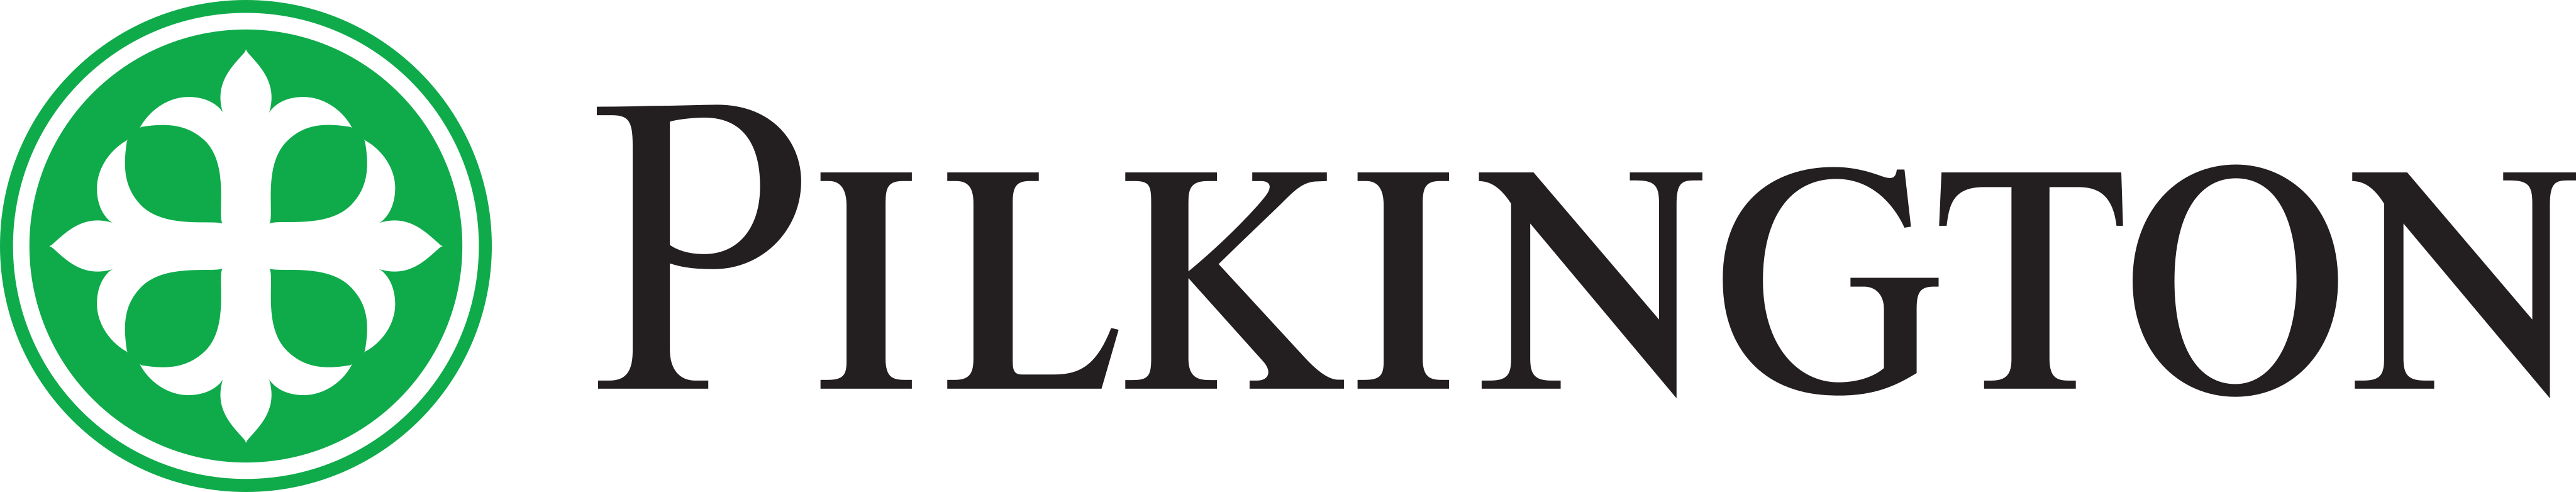 pilkington logo - Pilkington Logo